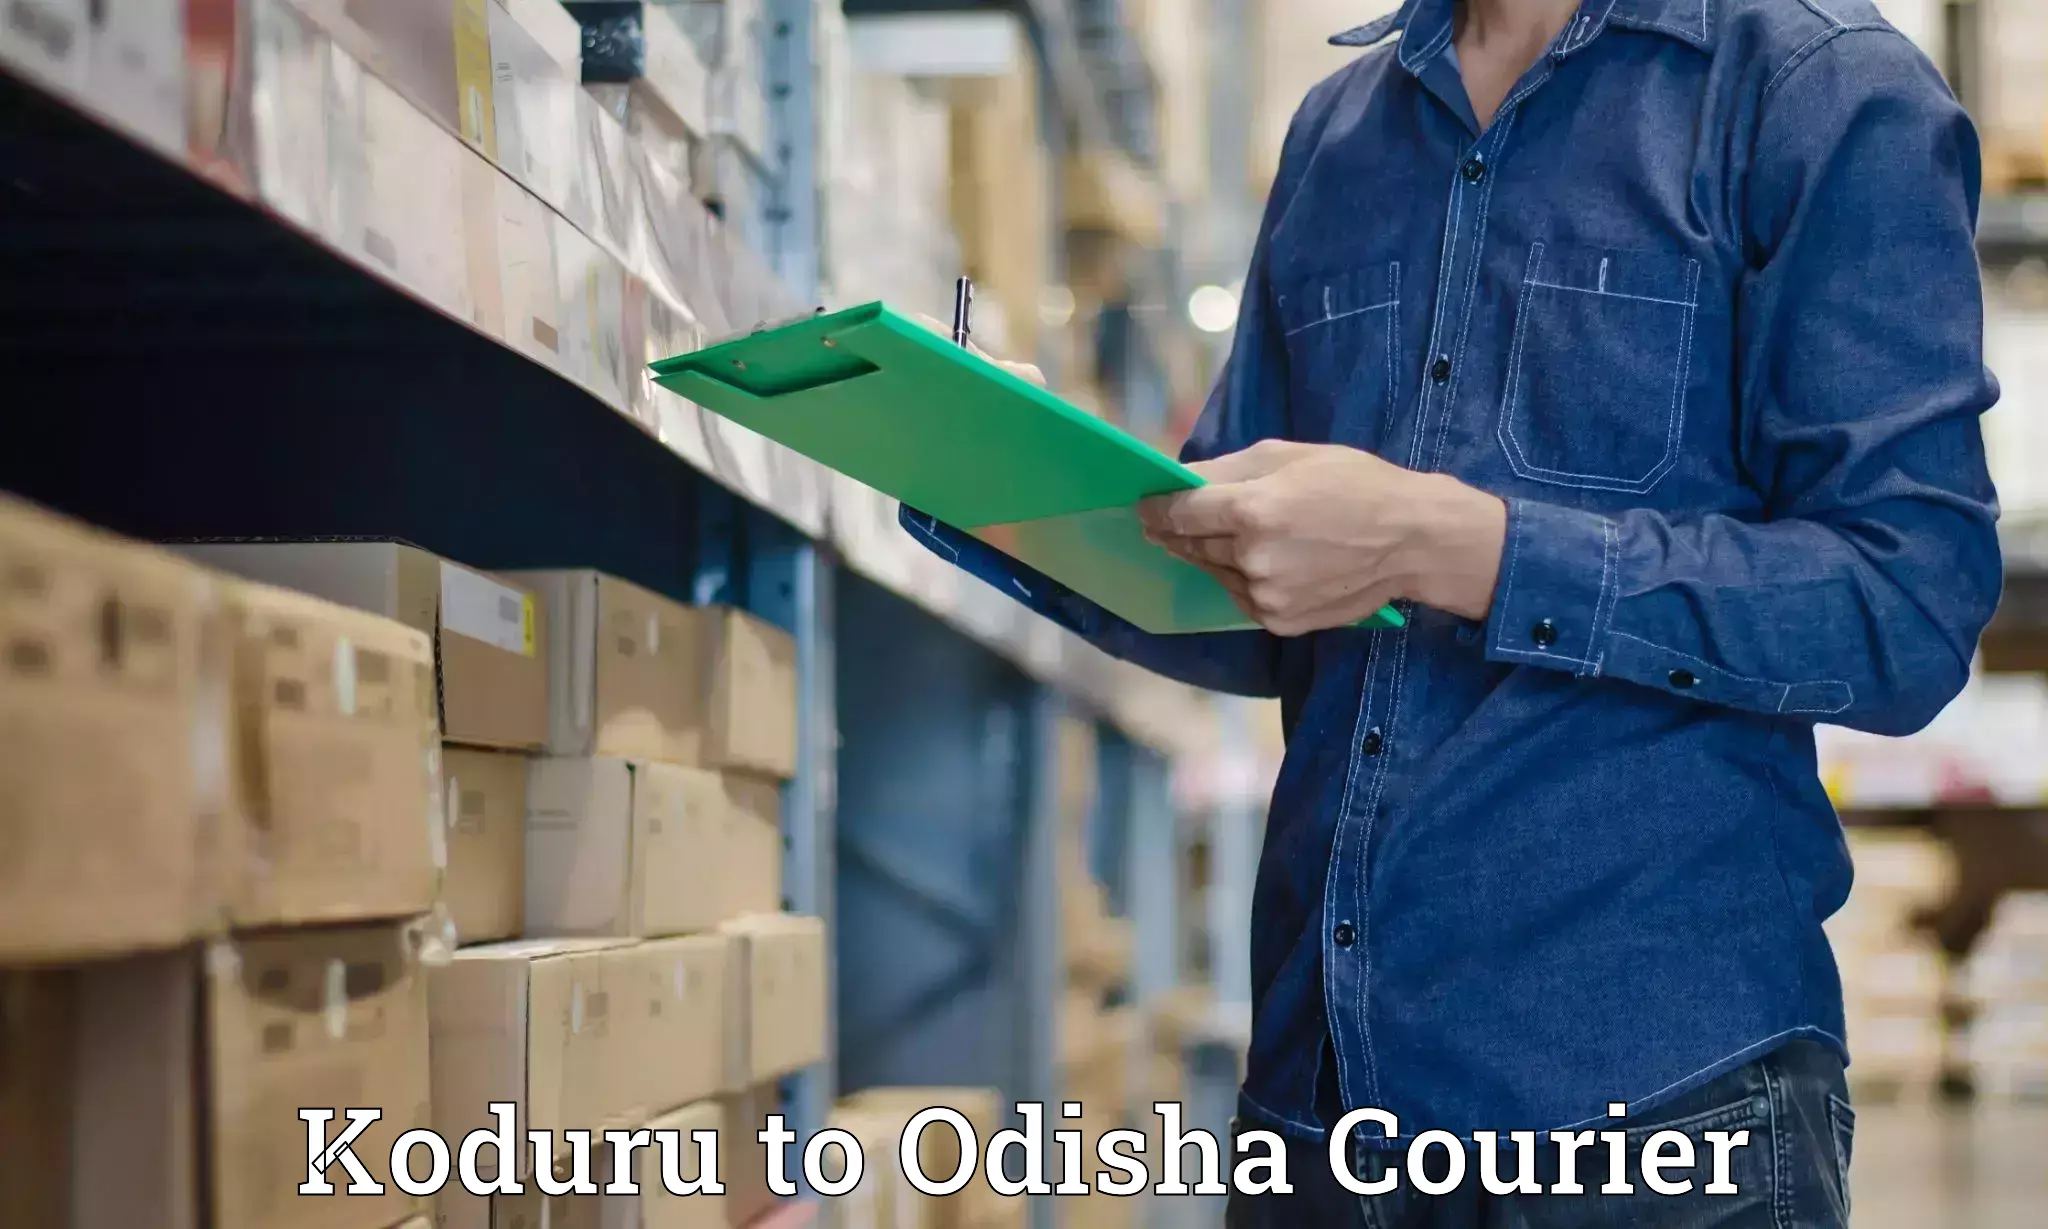 Efficient parcel service Koduru to Chandipur